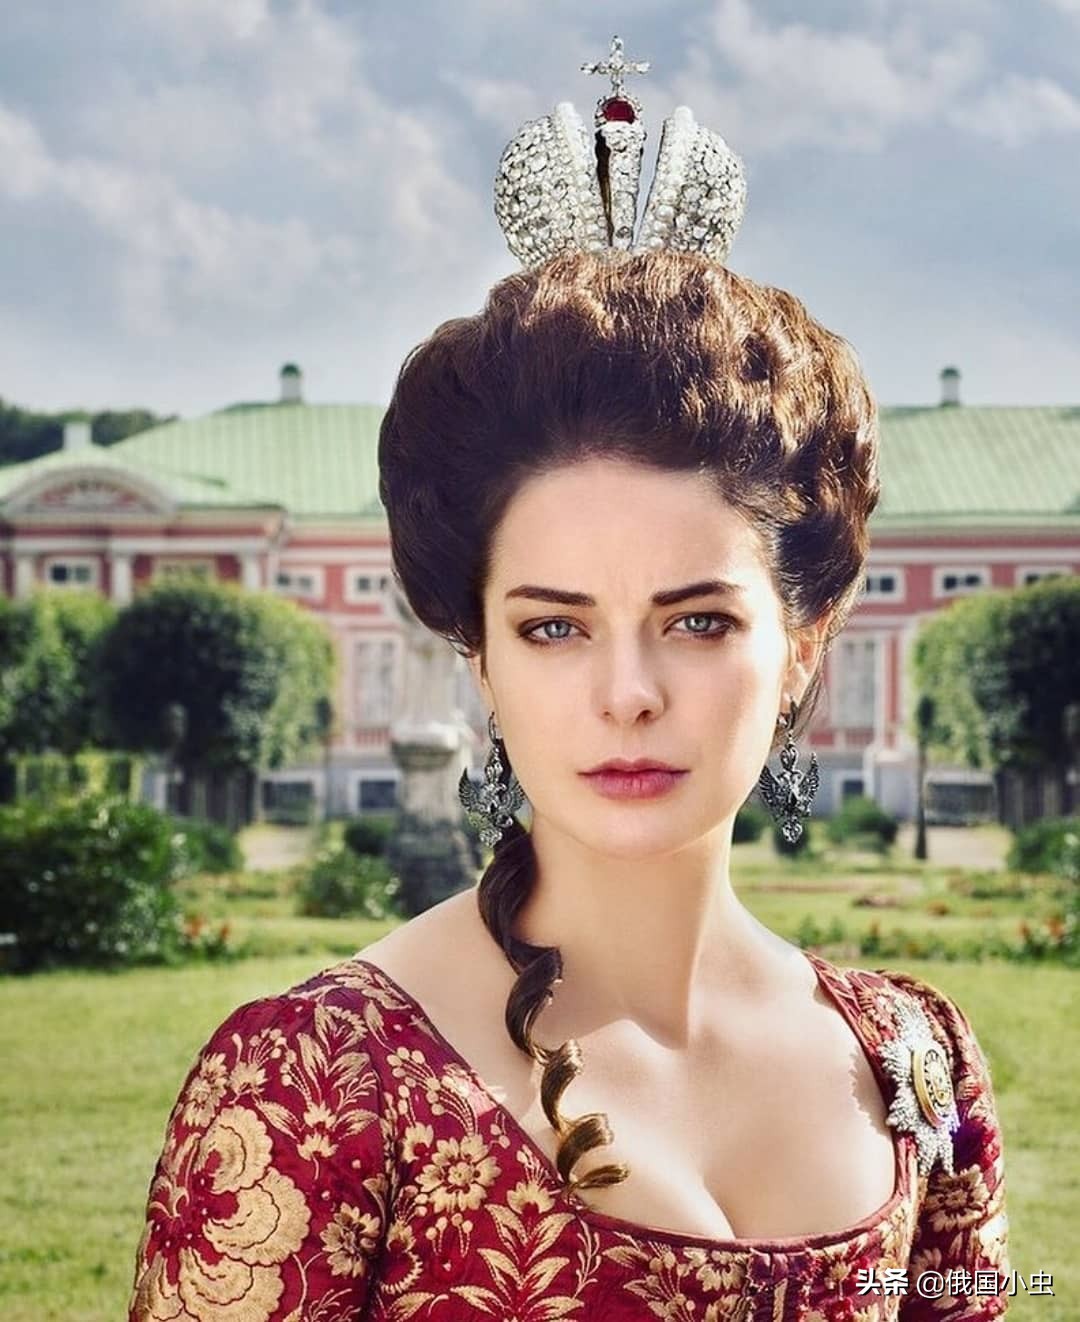 最受欢迎的俄罗斯电视剧《叶卡捷琳娜大帝》的介绍和评价